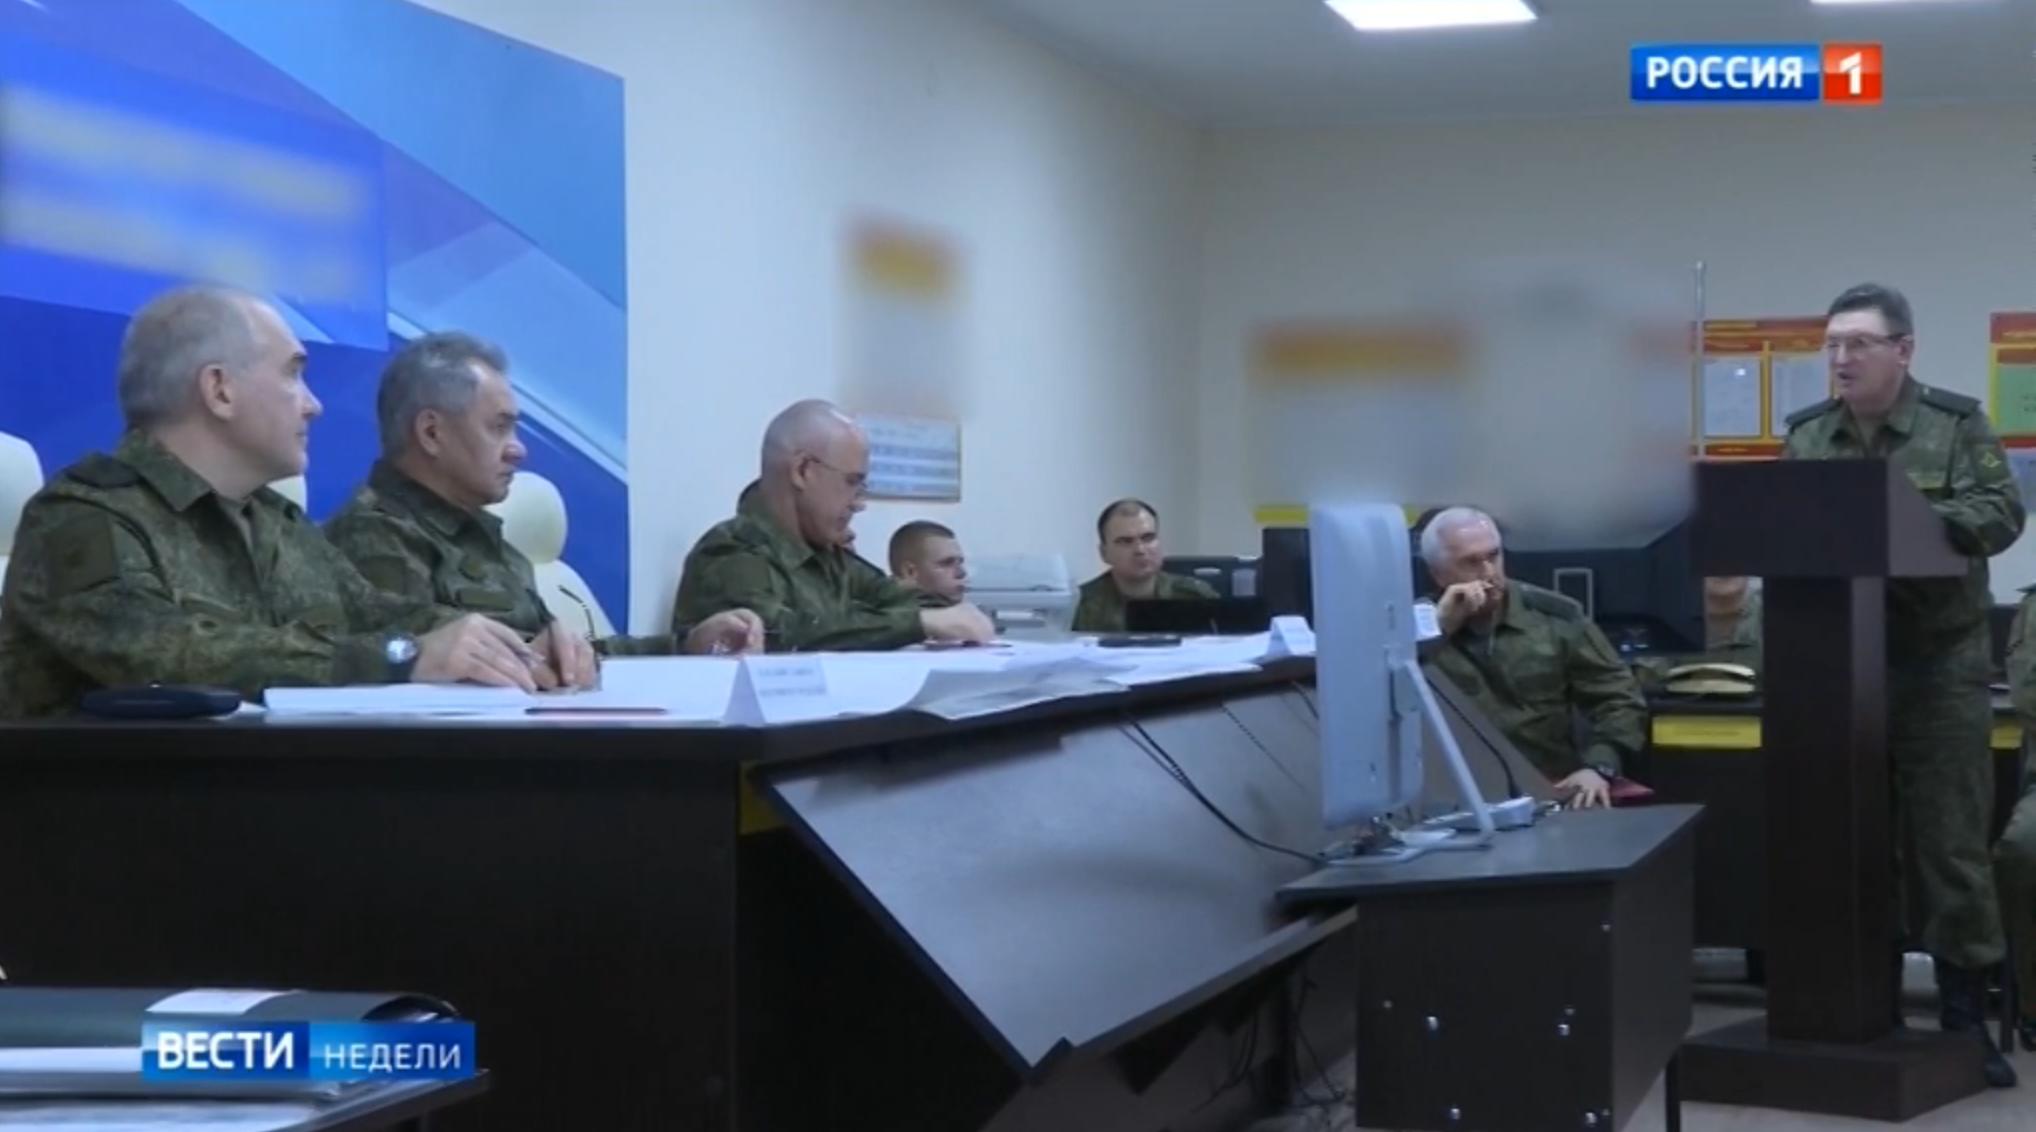 mezczyżni w rosyjskich mundurach polowych siedzą w sali konferencyjnej